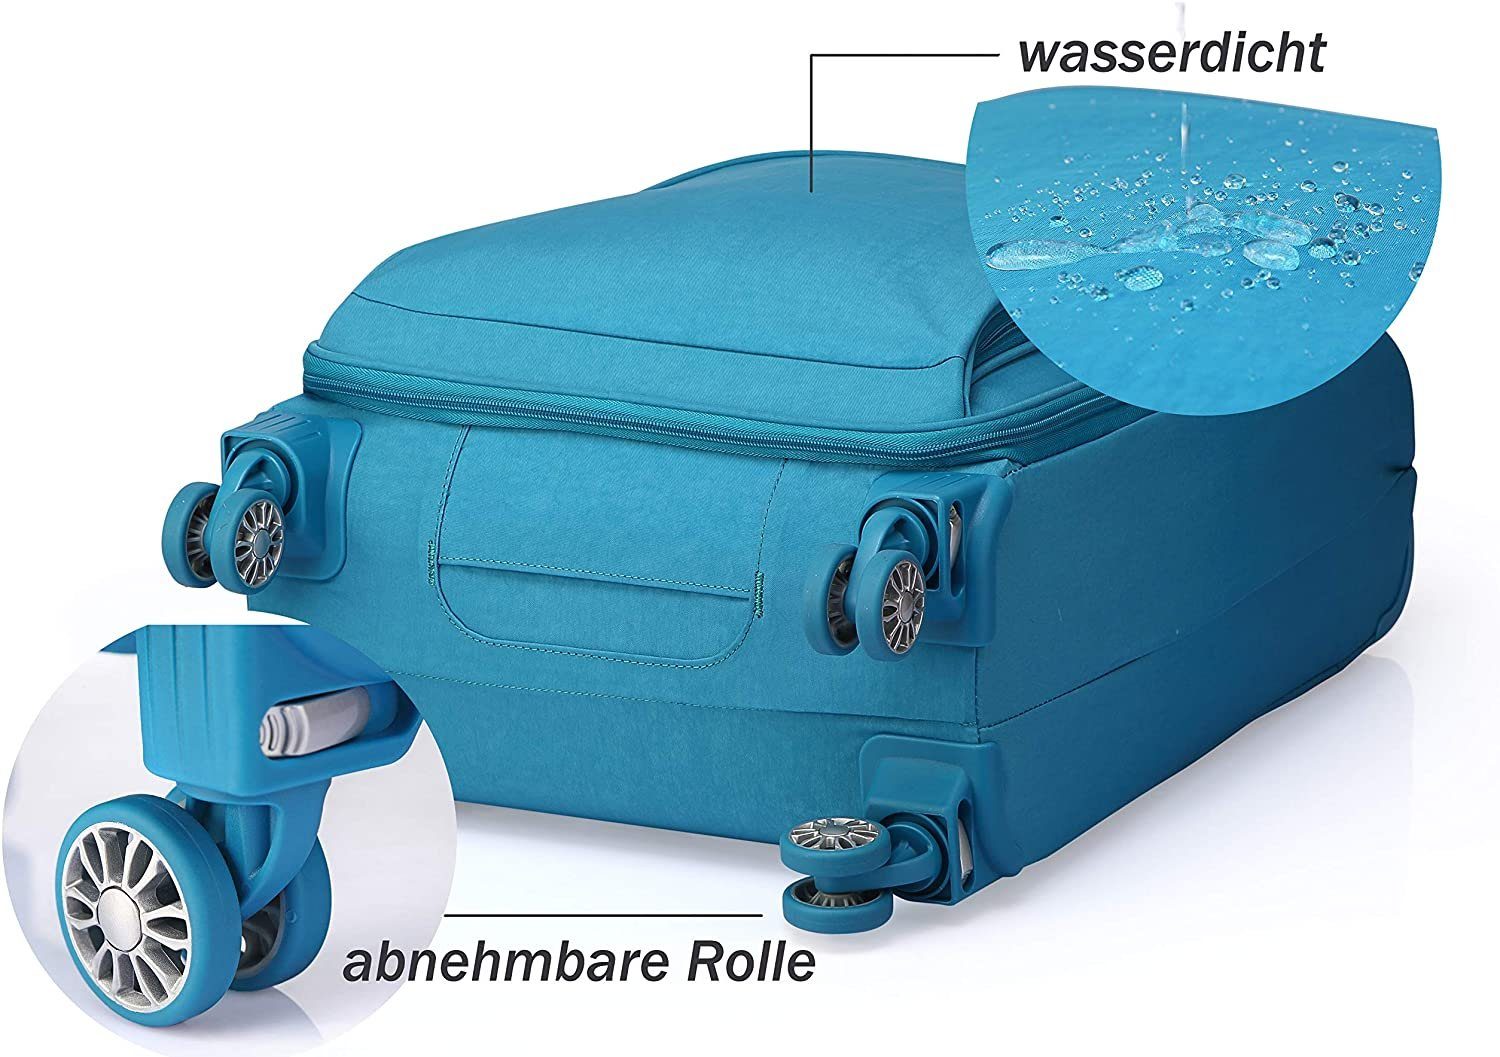 OUBO Koffer Verage funktionaler Trolley Handgepäck-Koffer zusammenfaltbar  mit Gratis Aufbewahrungstasche, wasserdicht, 4 Doppelrollen abnehmbar